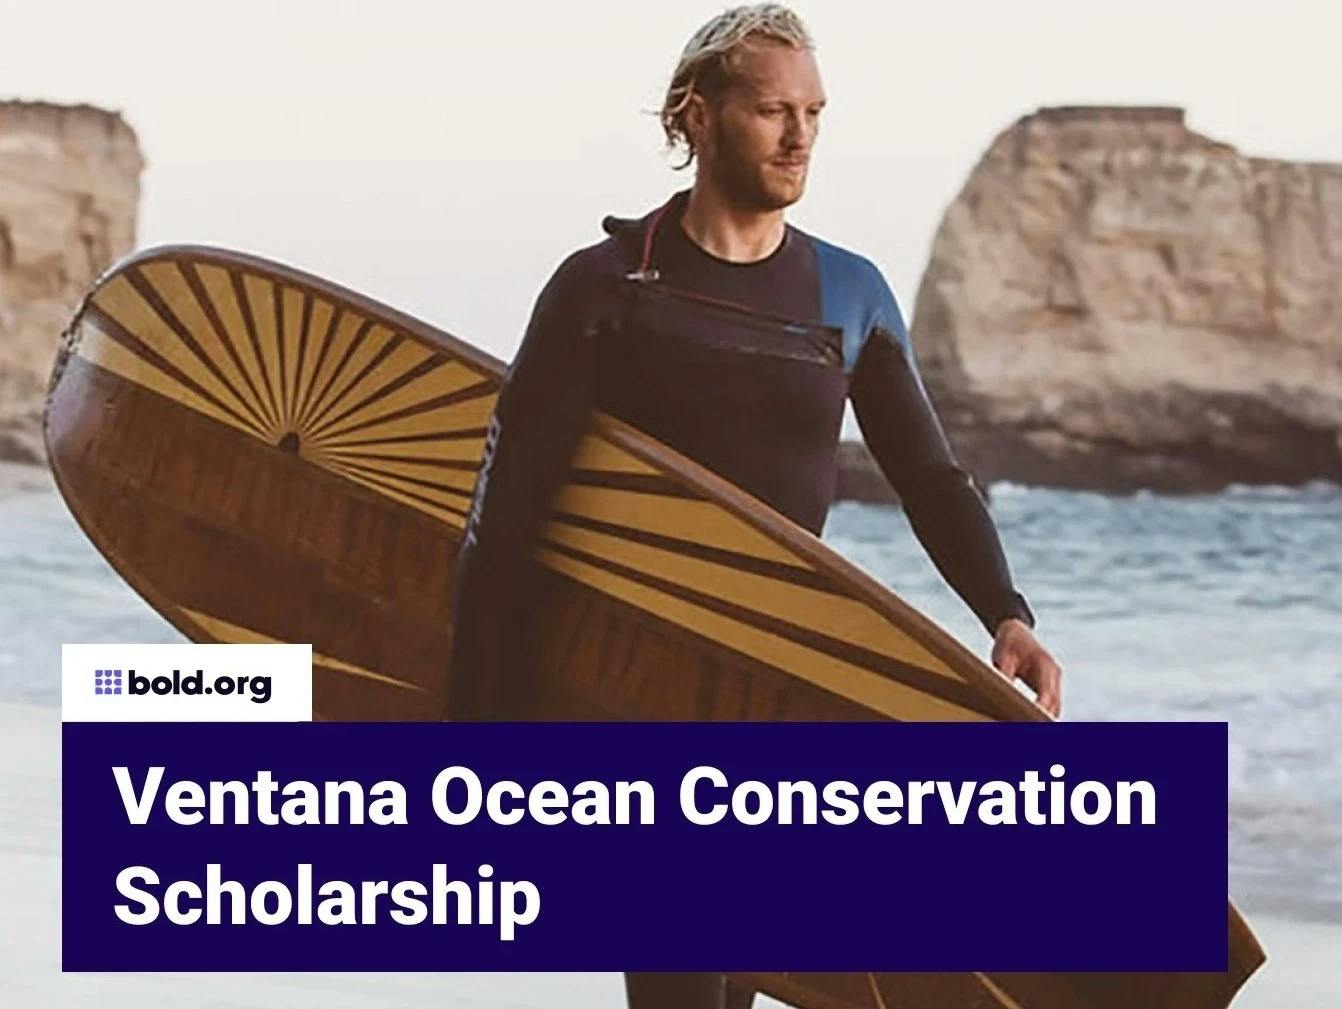 Ventana Ocean Conservation Scholarship Fund